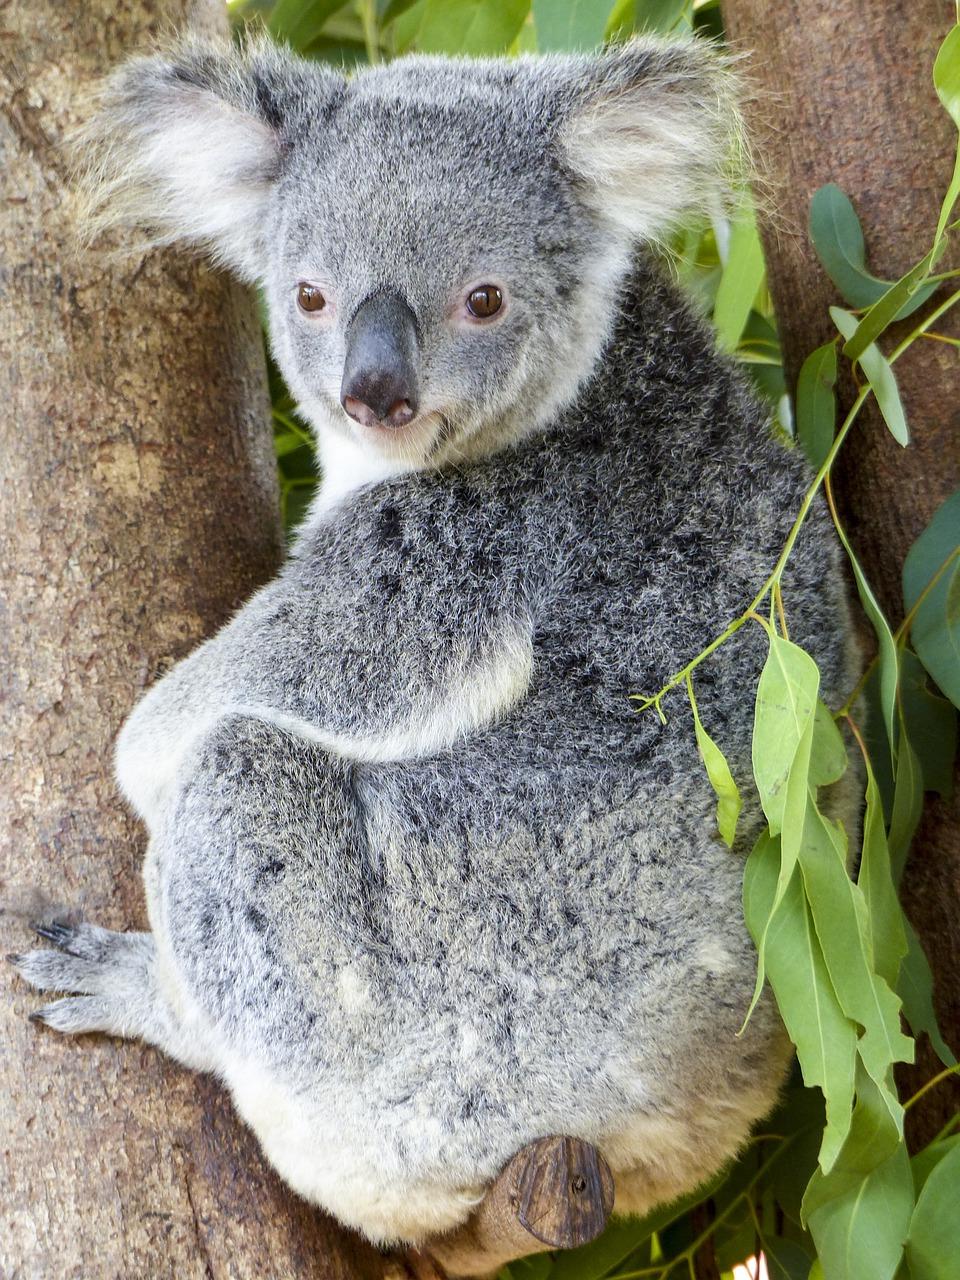 The Koala Bear's Spiritual Connection